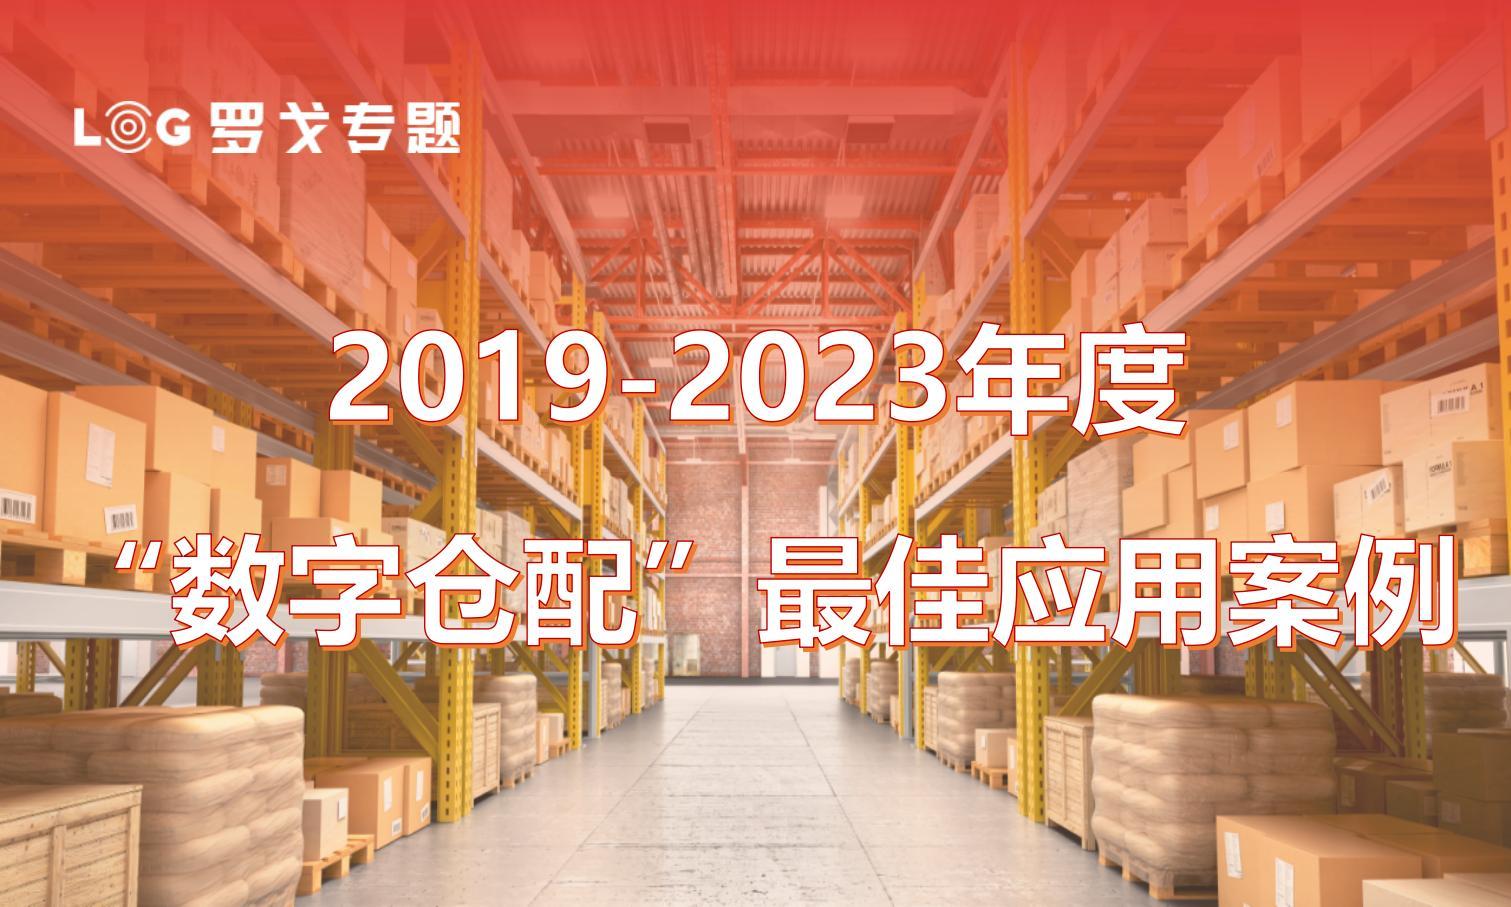 2019-2023年度“数字仓配”最佳应用案例